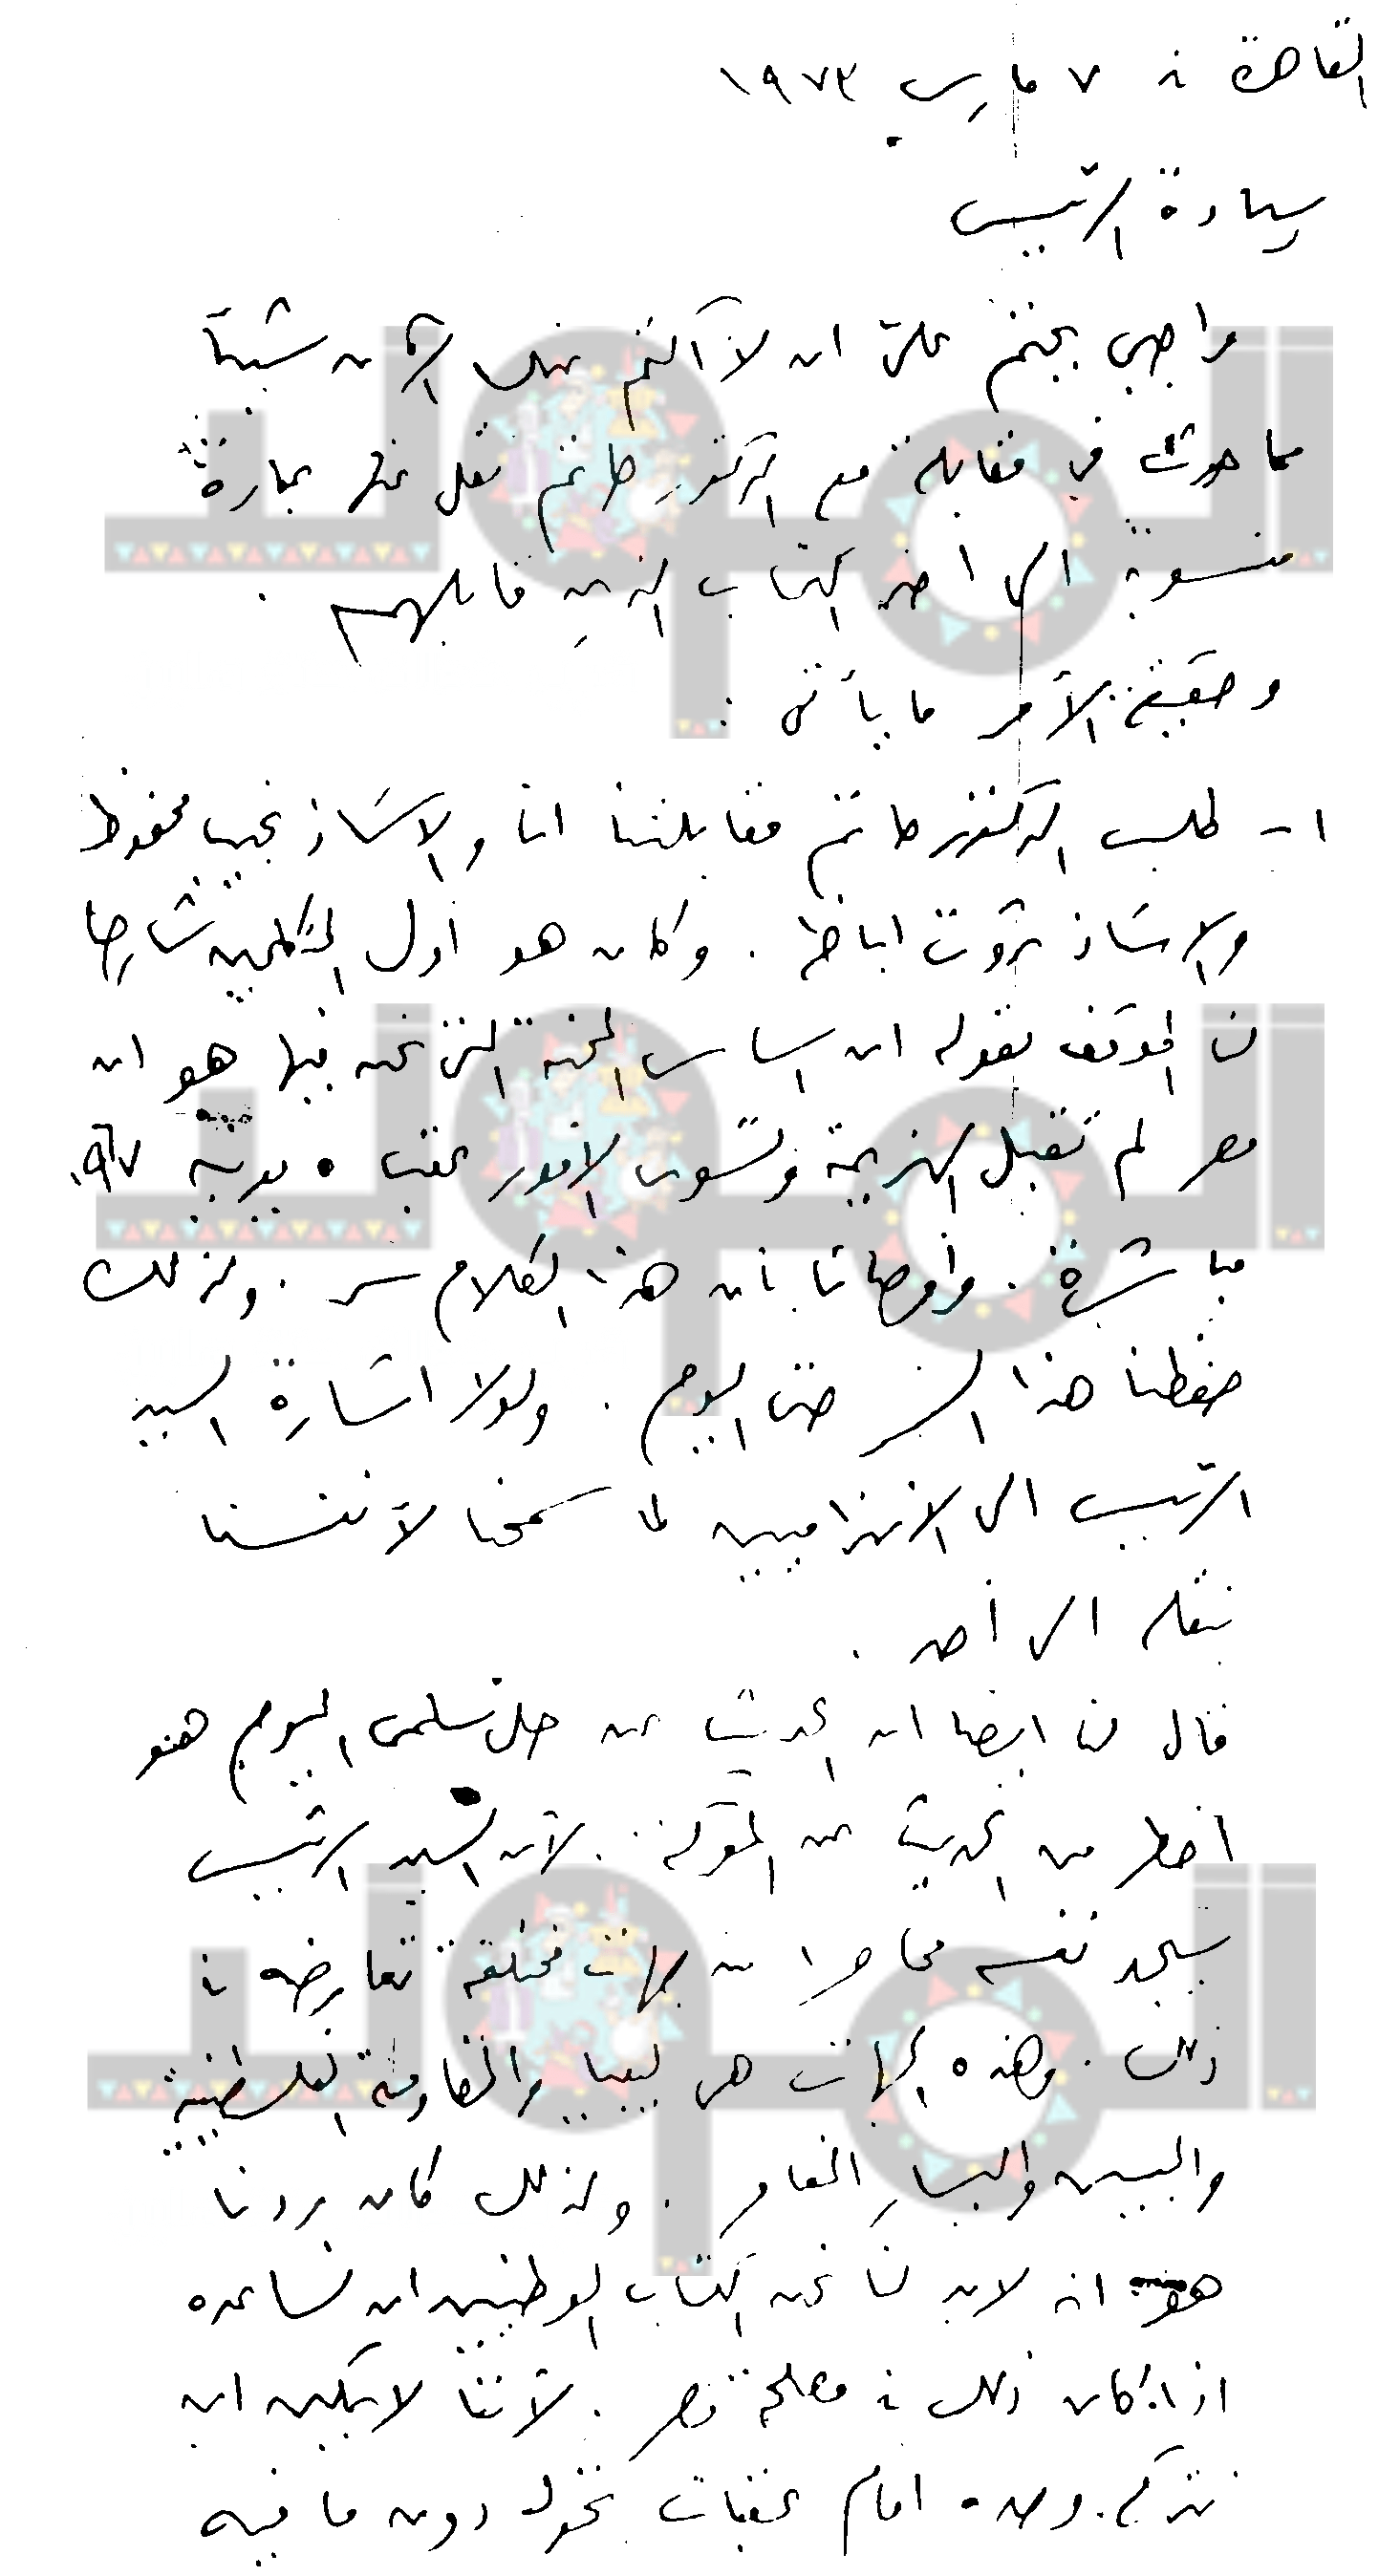 ص 1 من خطاب توفيق الحكيم لـ أنور السادات